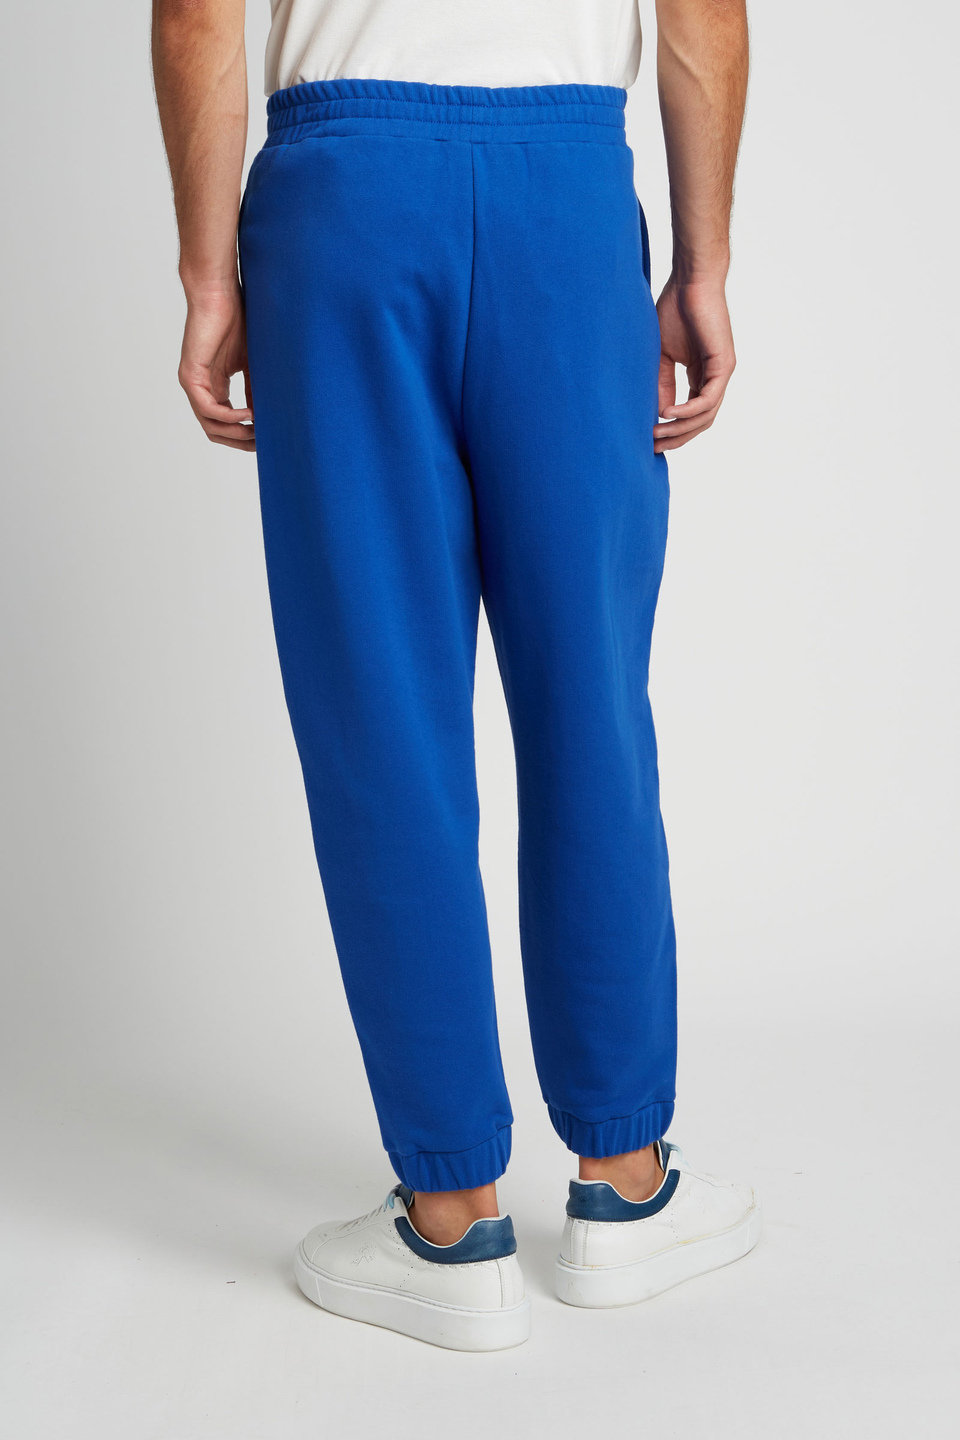 Pantalone da uomo modello jogger in cotone elasticizzato oversize | La Martina - Official Online Shop